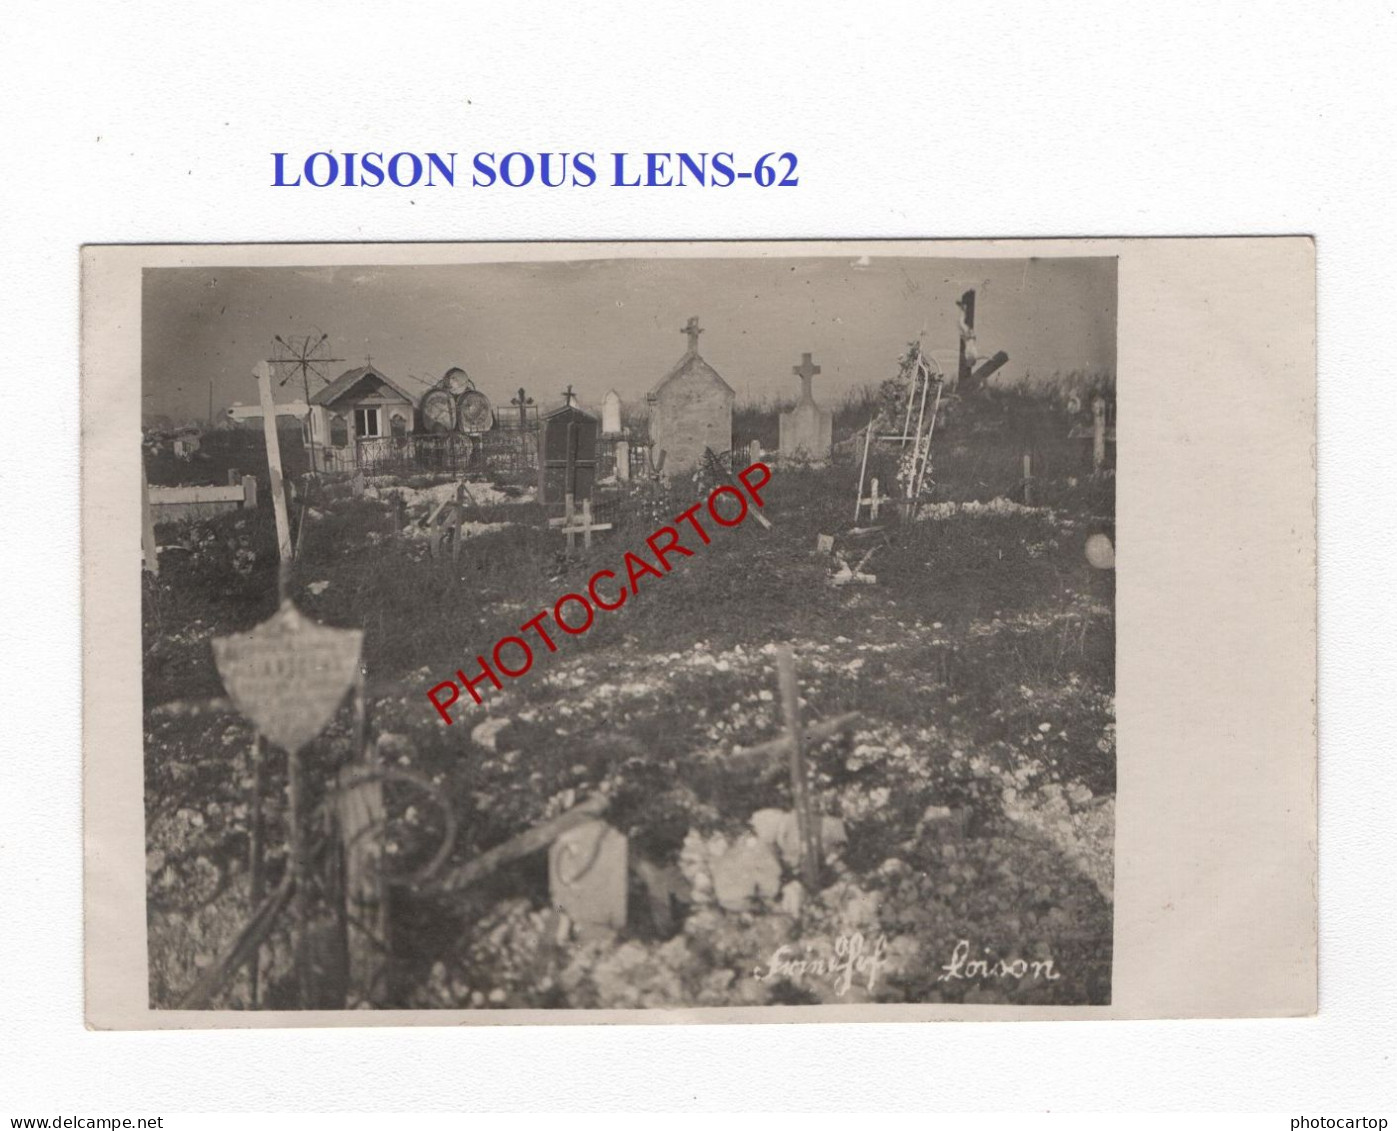 LOISON SOUS LENS-62-Cimetiere-Tombes-CARTE PHOTO Allemande-GUERRE 14-18-1 WK-MILITARIA- - Soldatenfriedhöfen